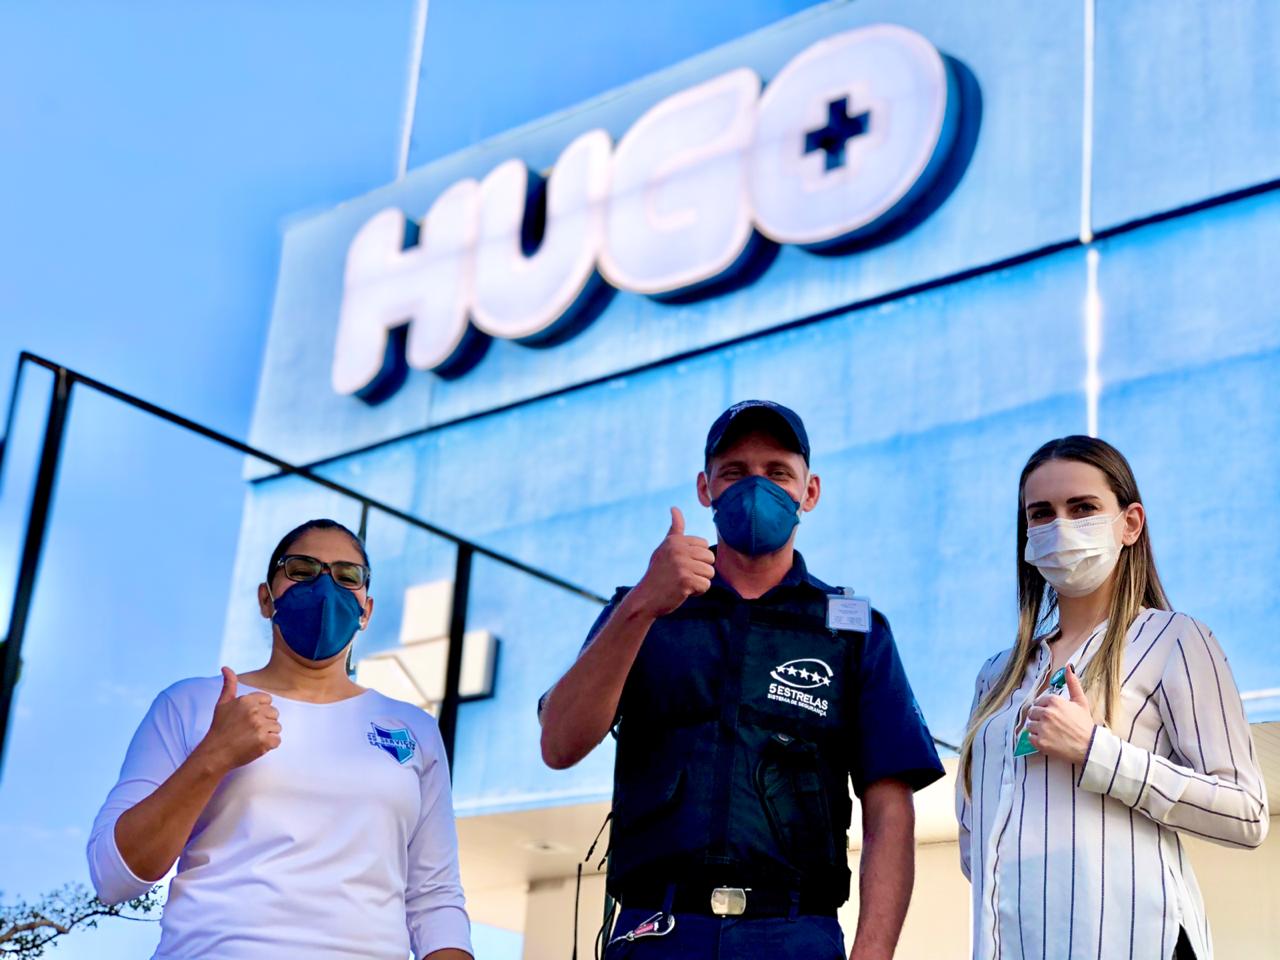 Hugo altera atendimento e fica mais humanizado em período de pandemia